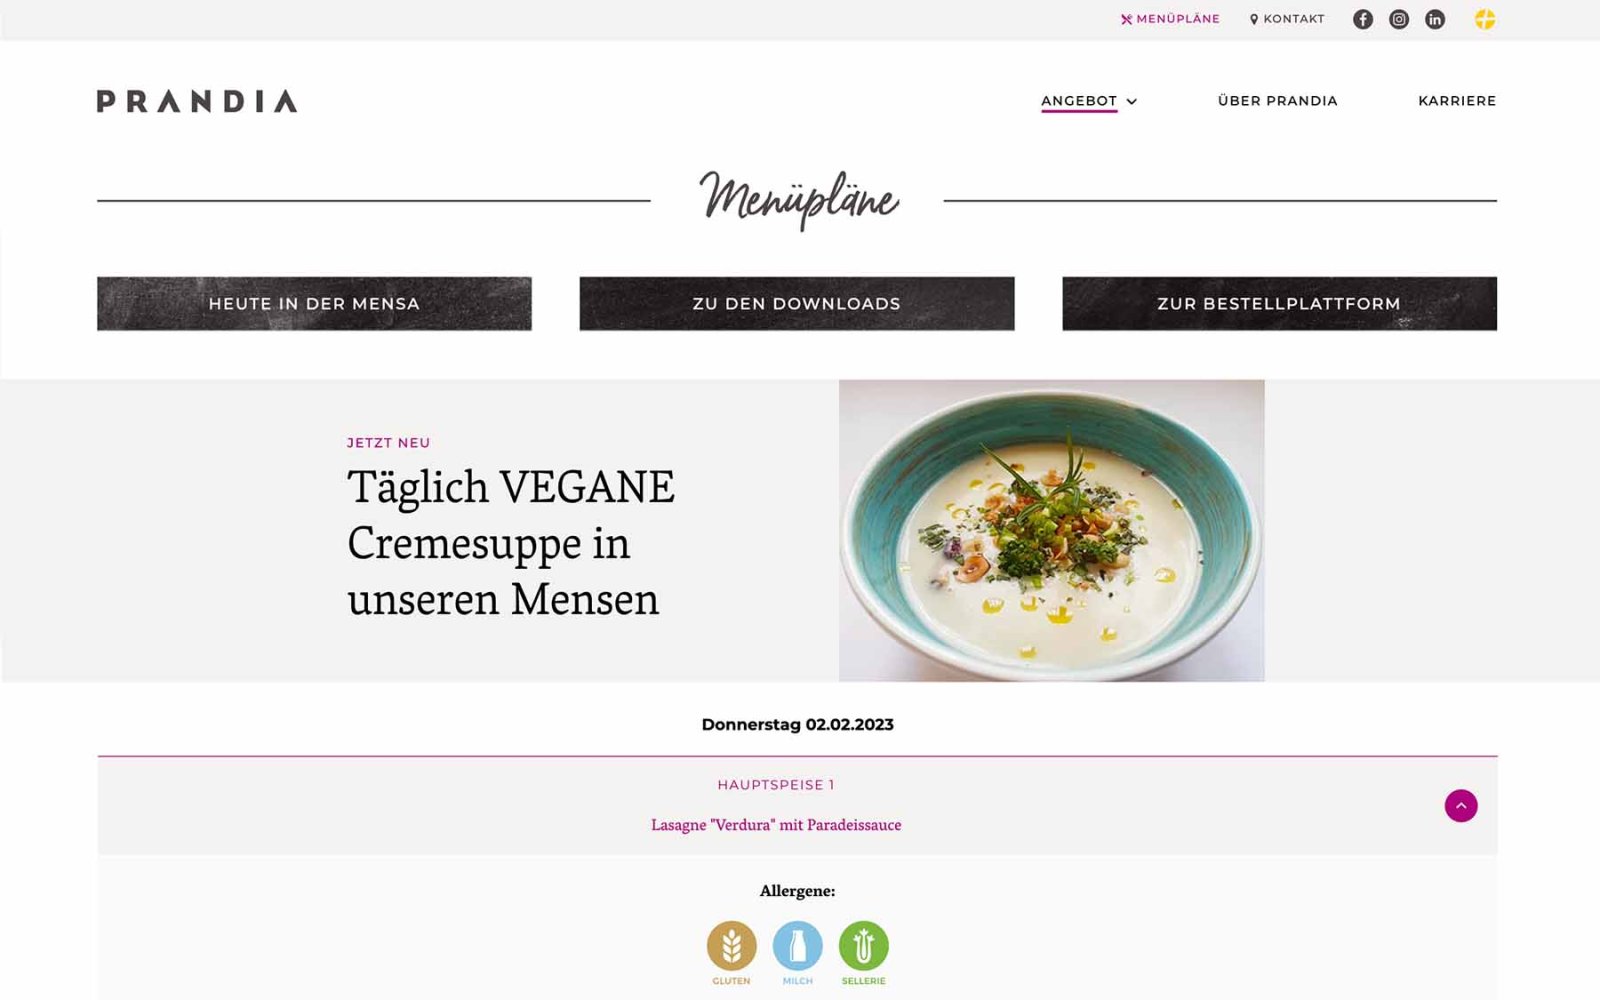 Gastronomie-Website Prandia – Übersicht Menüplan mit Allergen-Angaben.